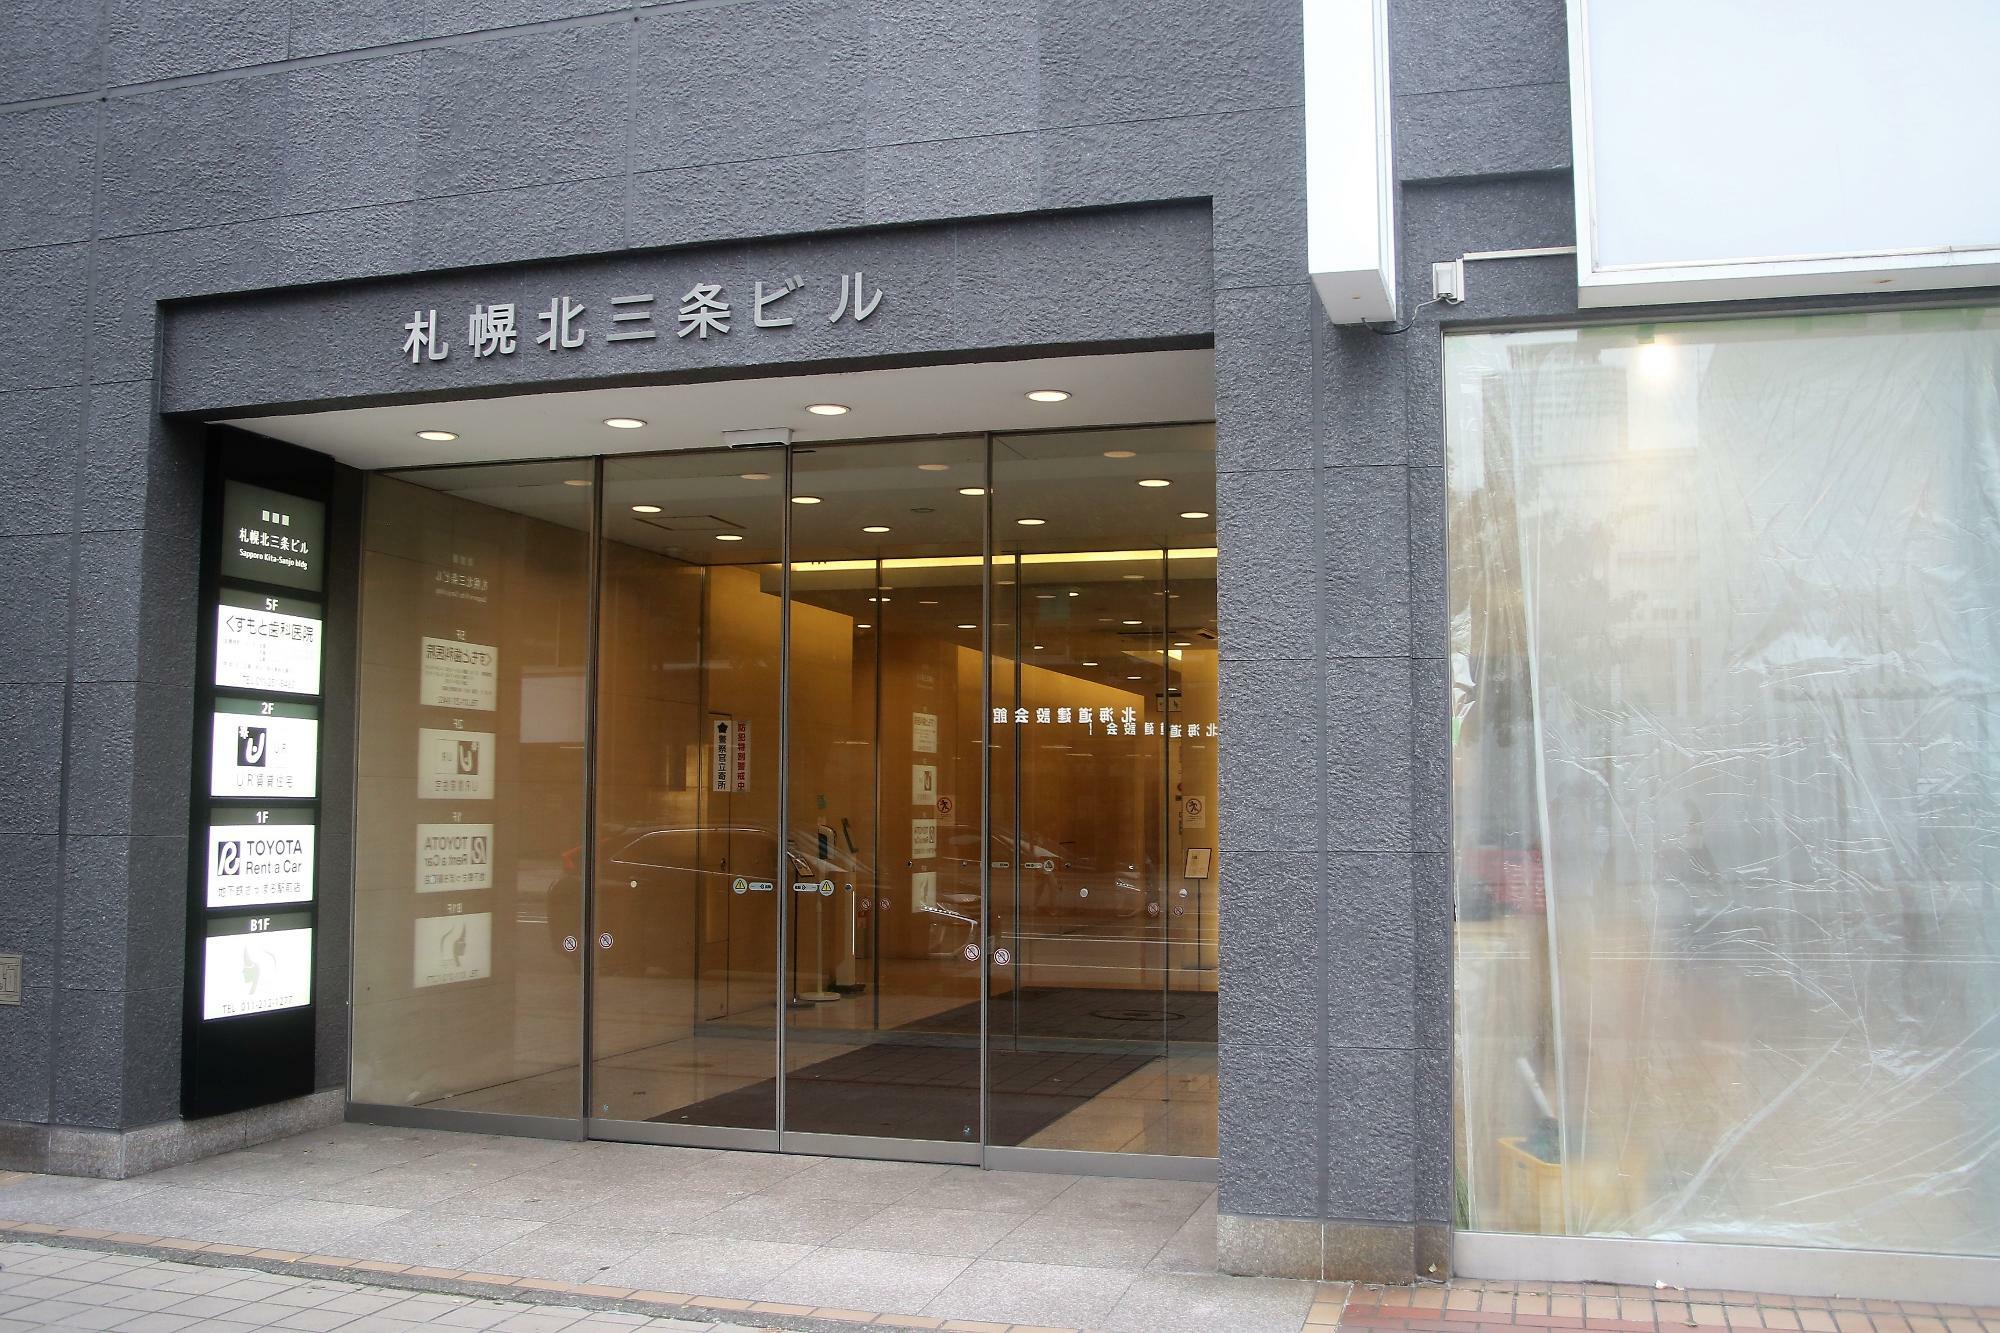 札幌北三条ビル1階。右側がJR北海道バス案内所になる